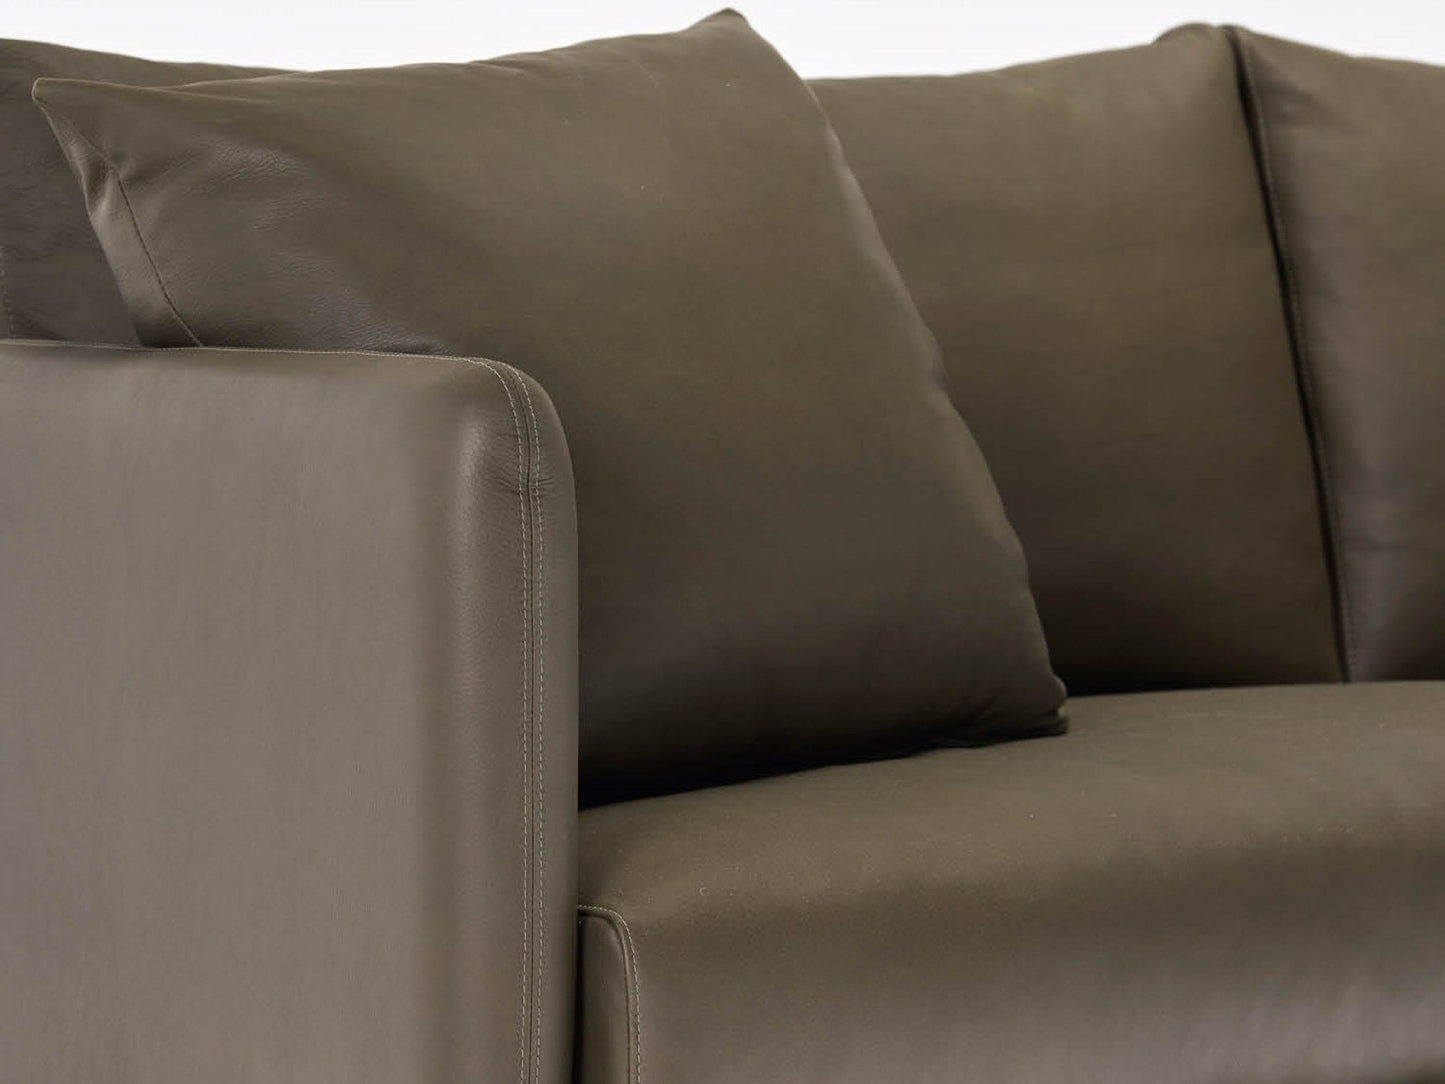 Avoca Leather Sofa Indoor Furniture Kett 